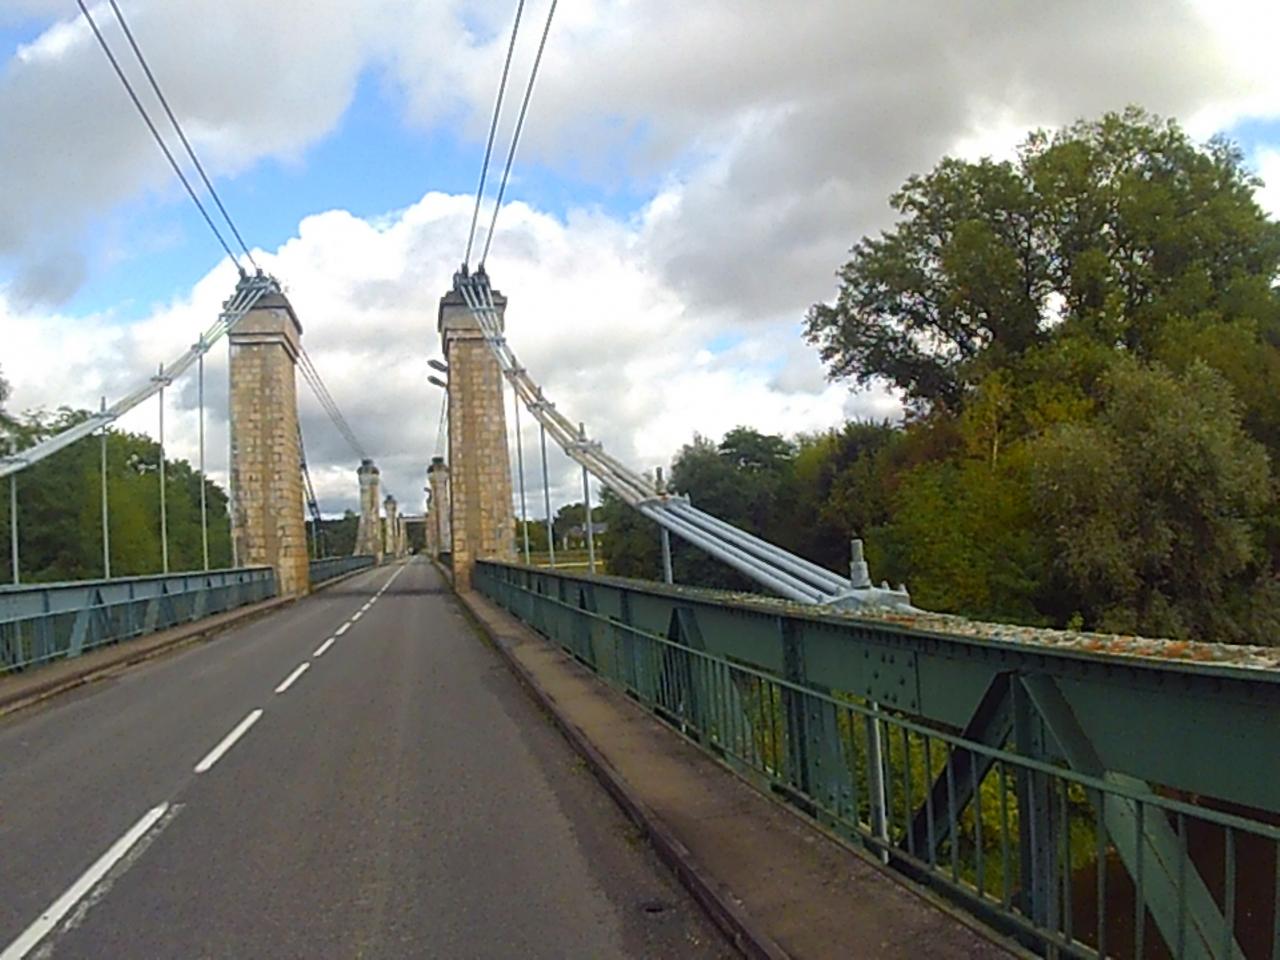 pont sur la Loire